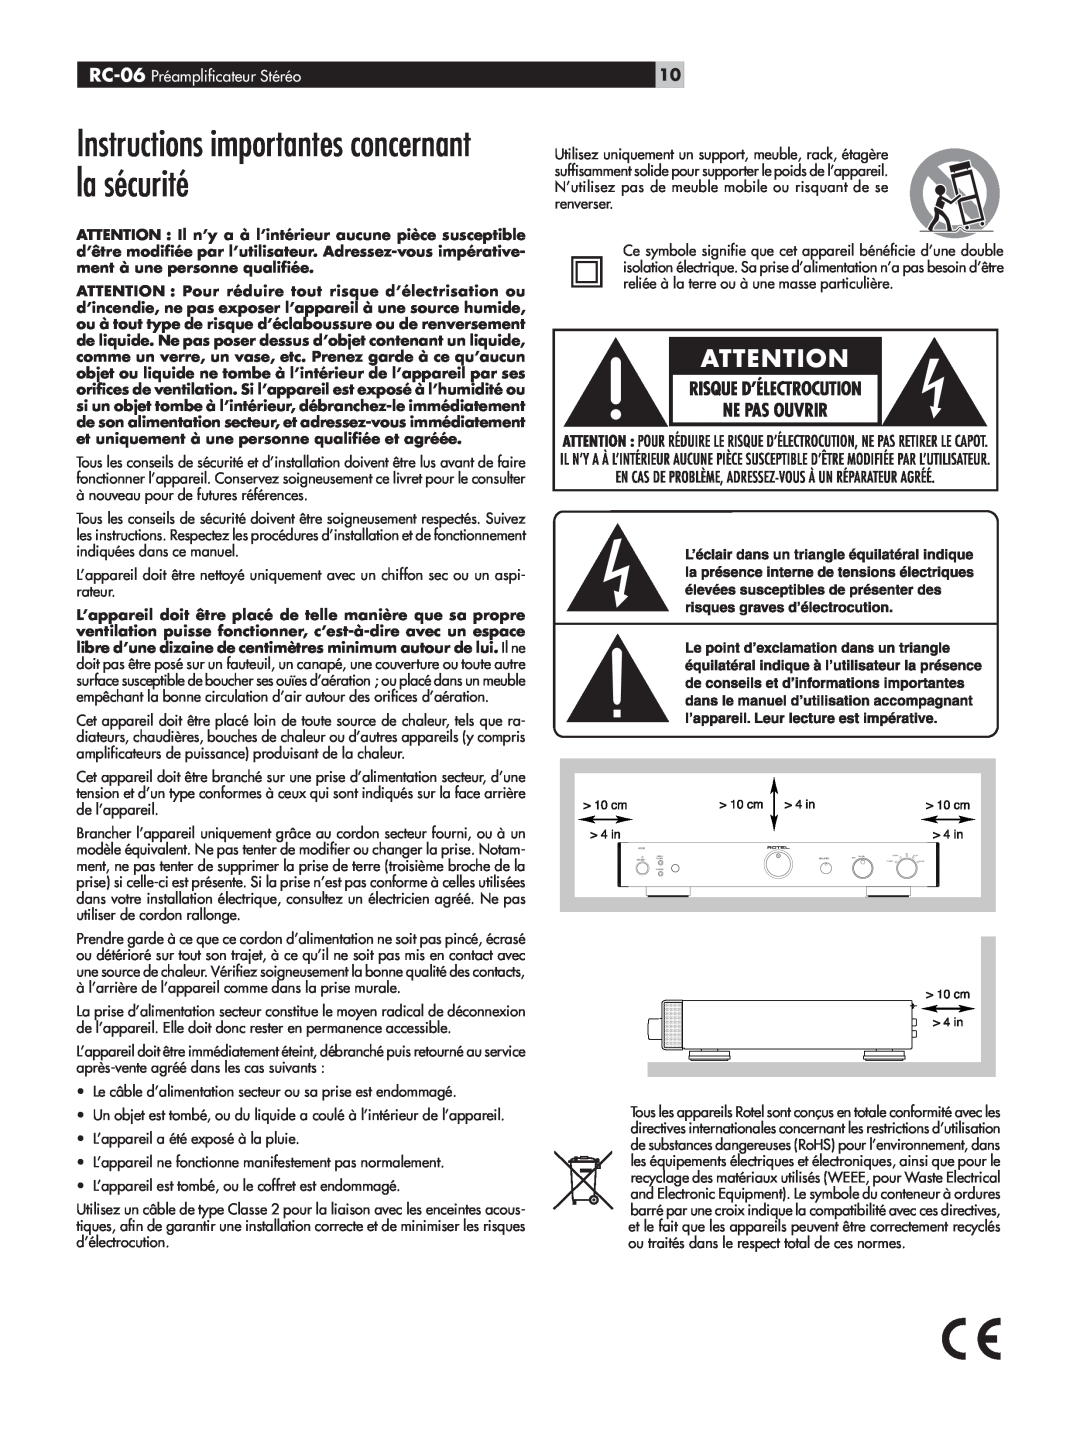 Rotel owner manual Instructions importantes concernant la sécurité, RC-06 Préampliﬁcateur Stéréo 